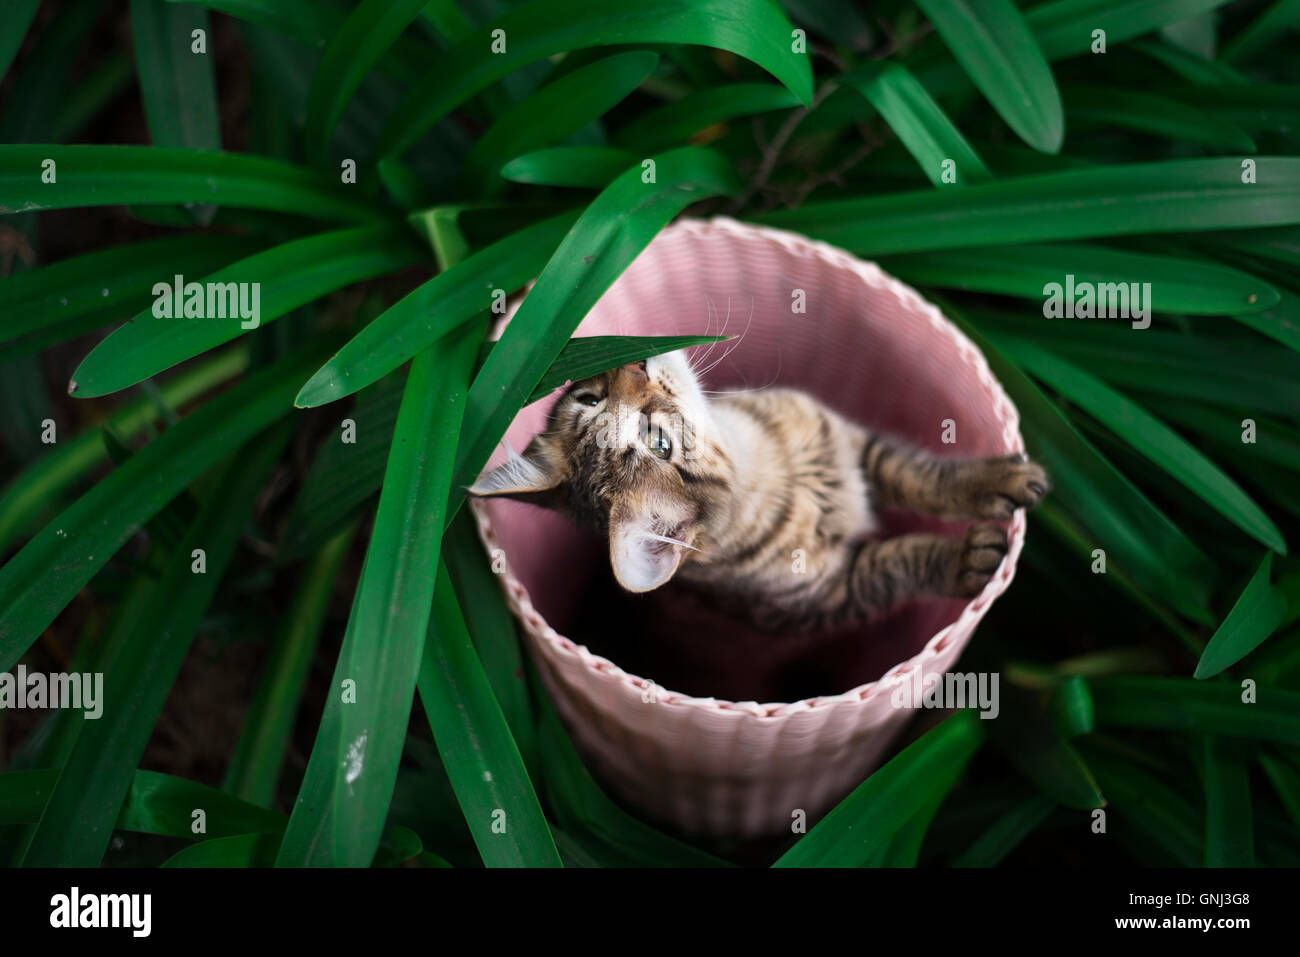 Kitten hiding in a basket Stock Photo